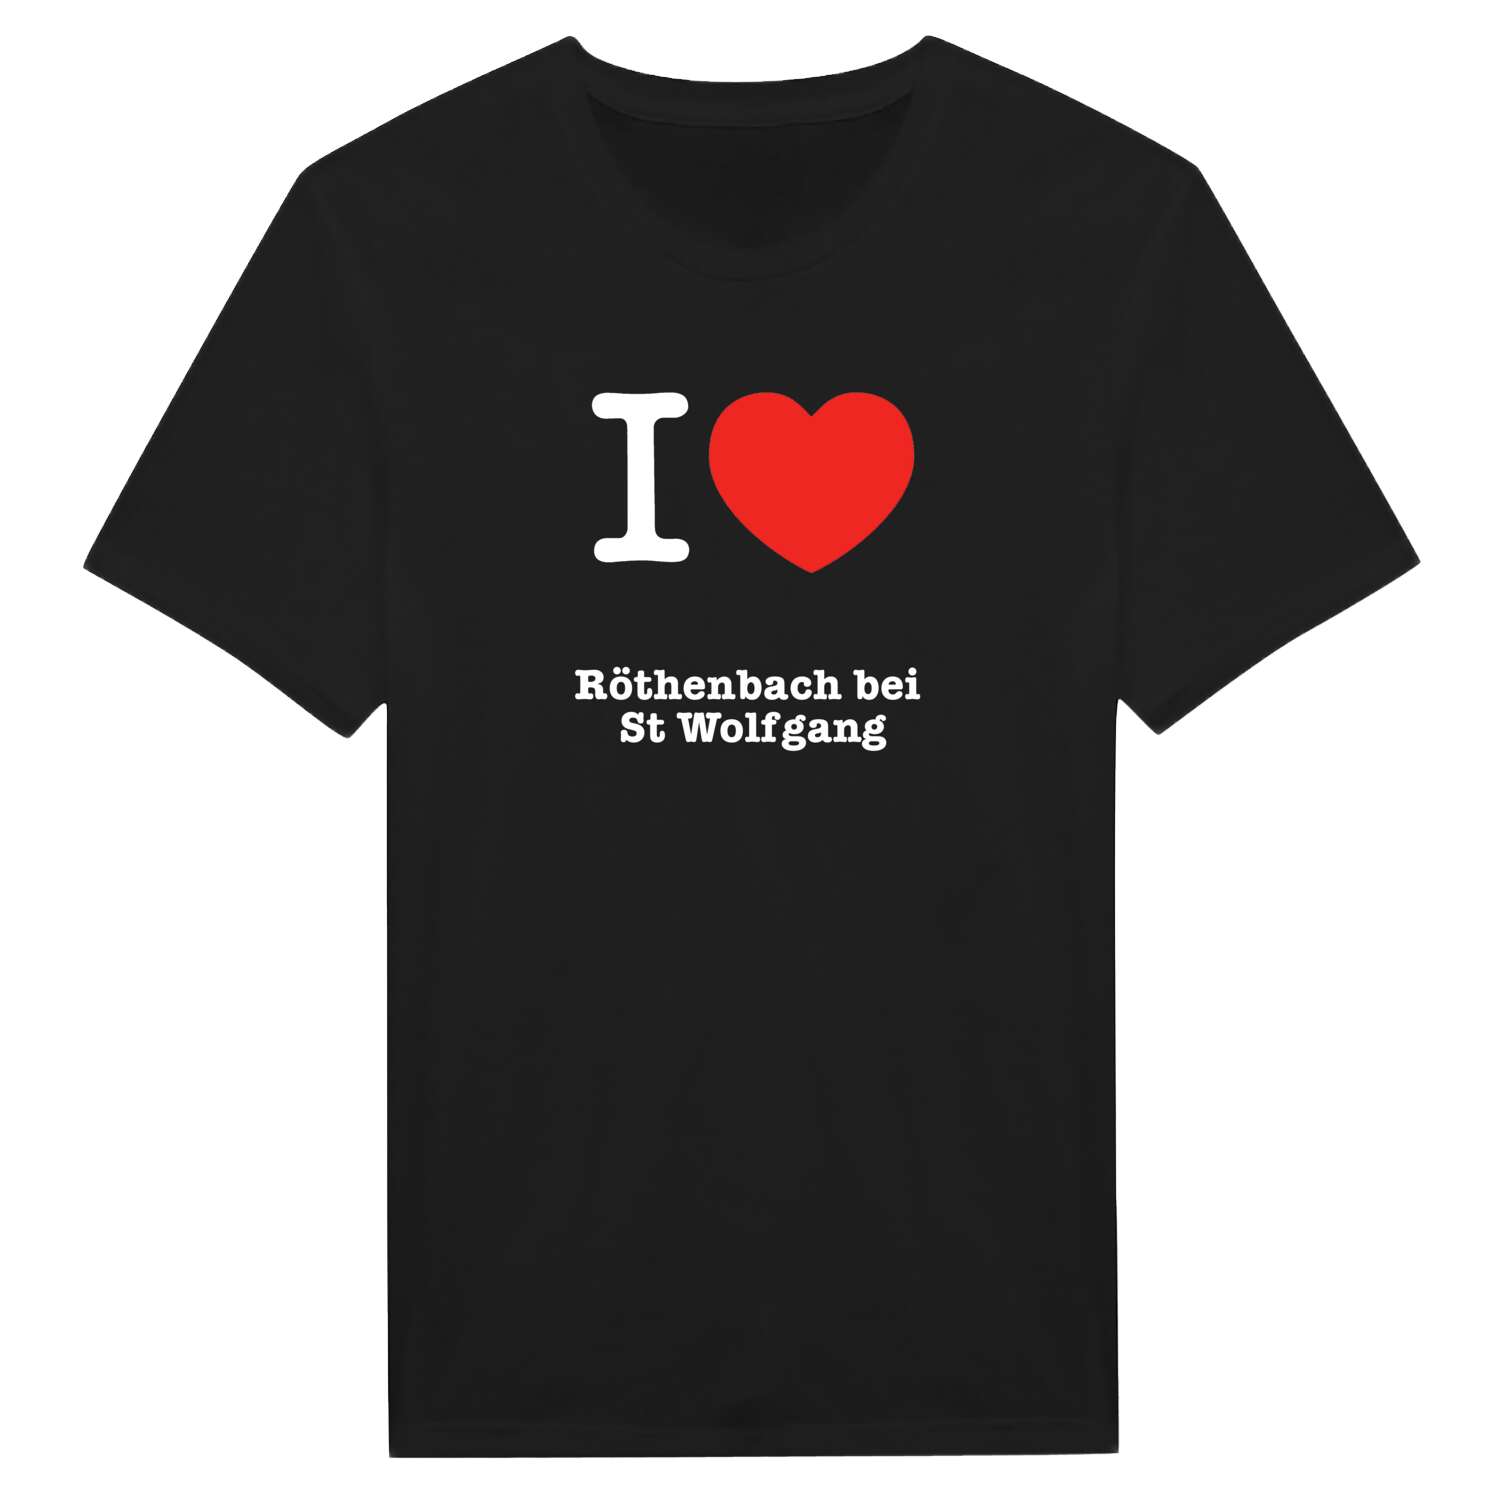 Röthenbach bei St Wolfgang T-Shirt »I love«